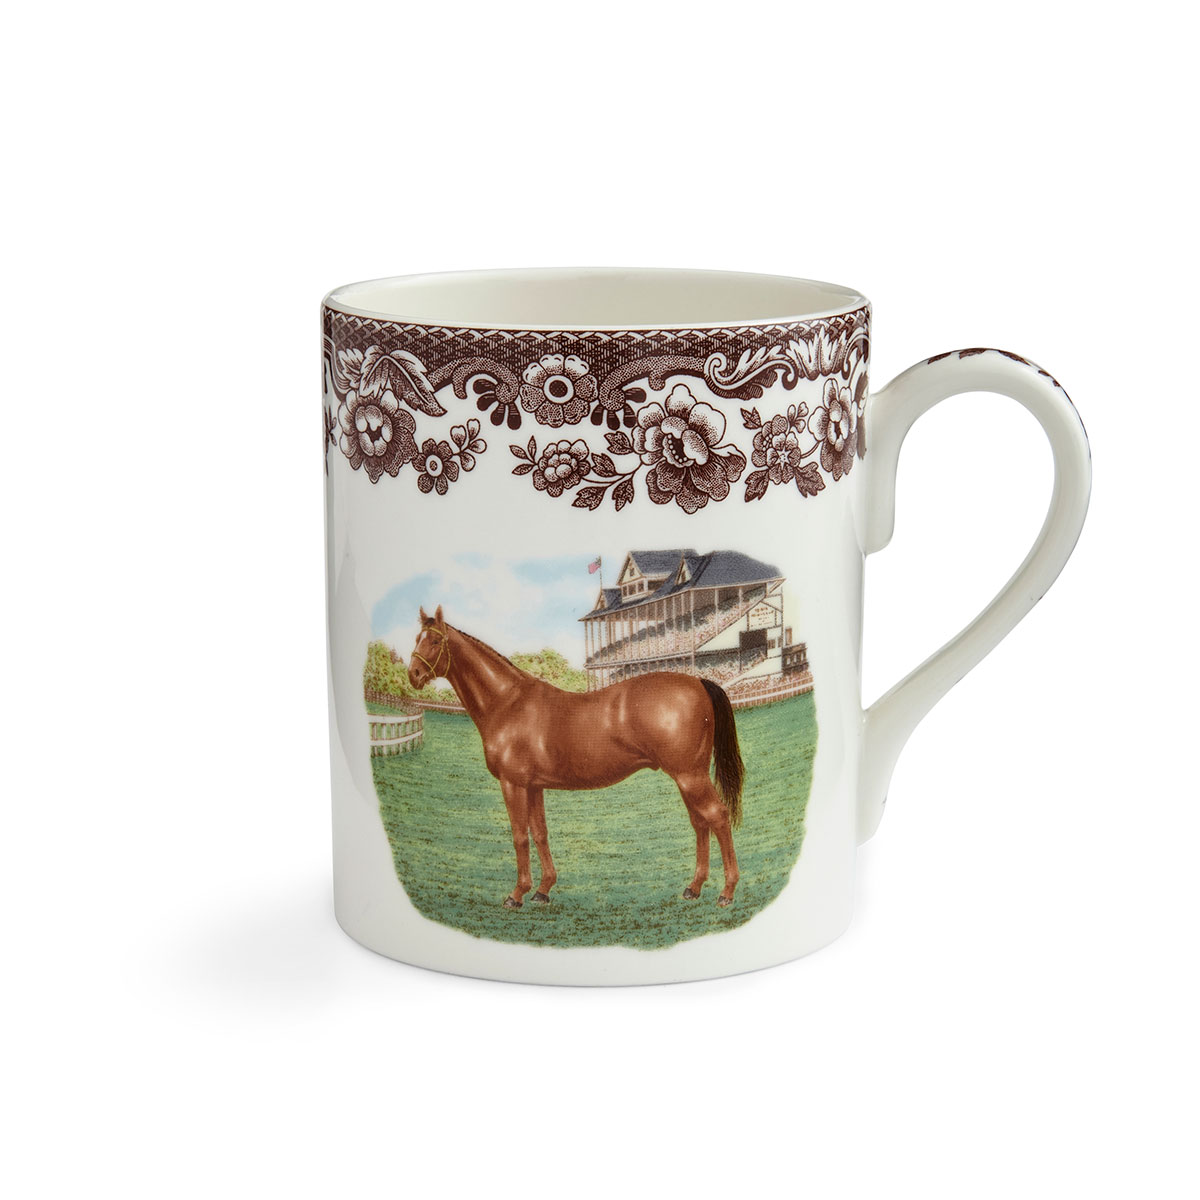 Spode Woodland Horses Mug, Thoroughbred